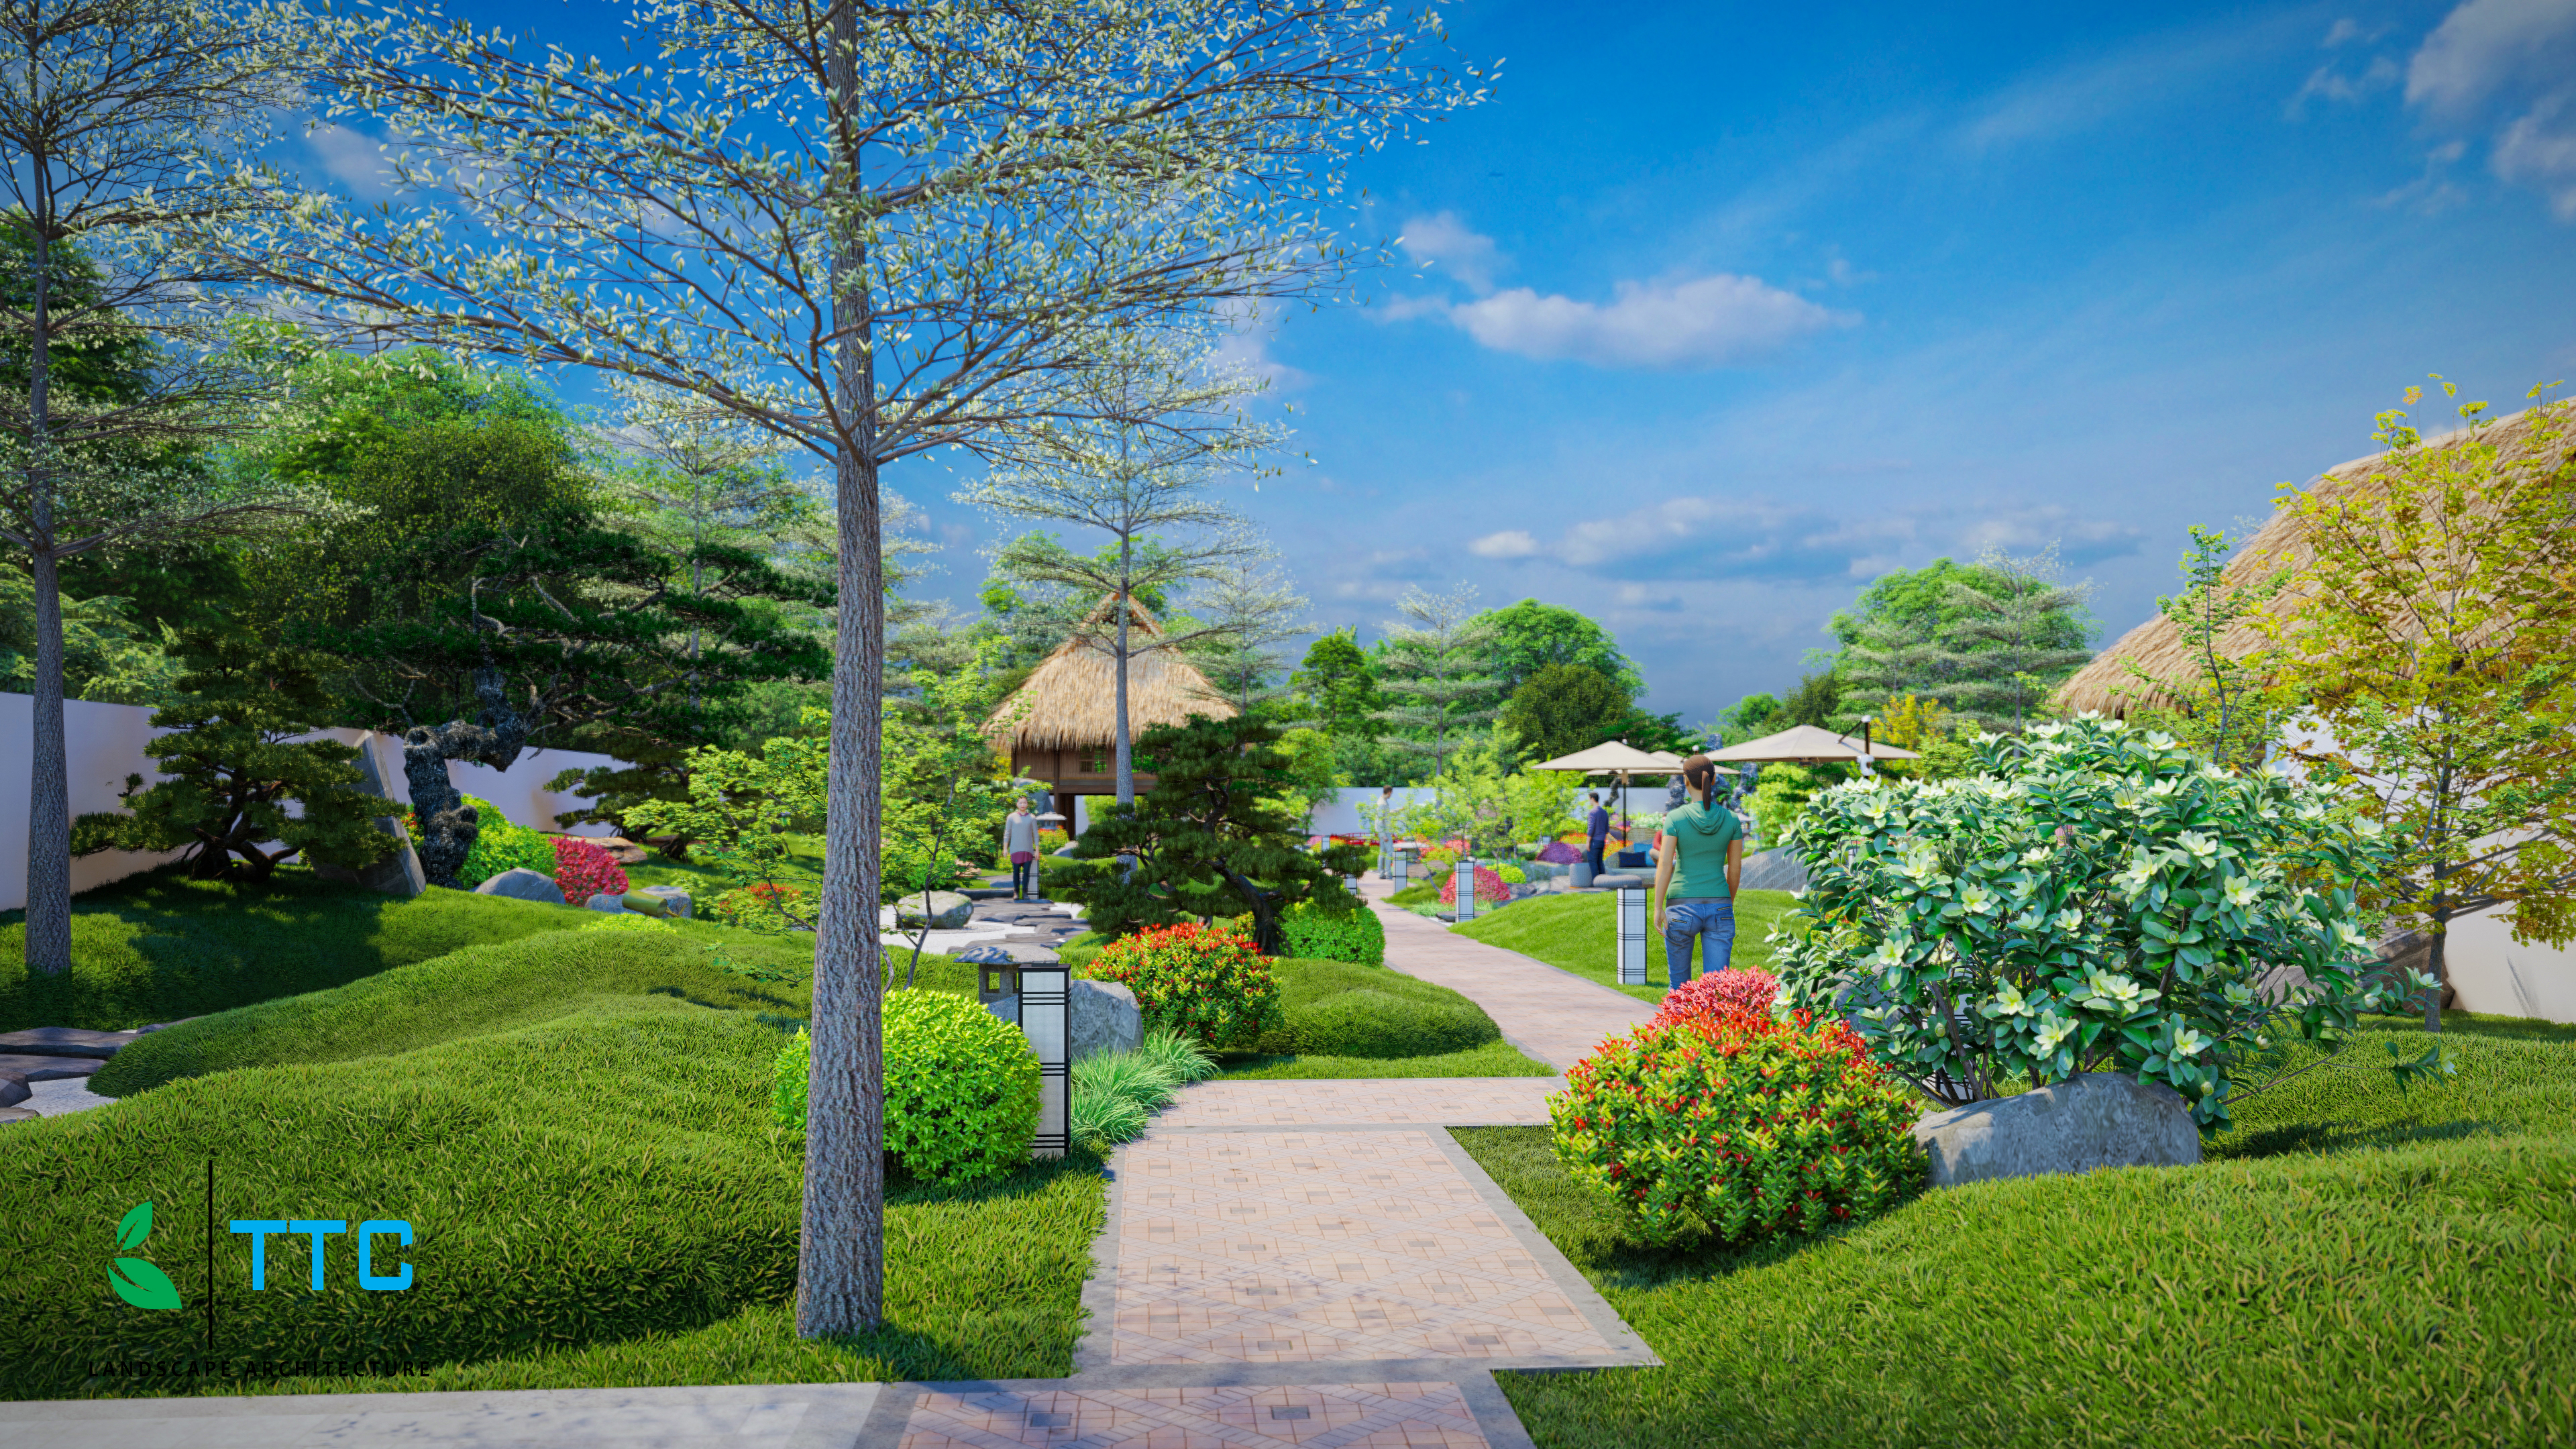 Thiết kế Resort tại Đắk Lắk SÂN VƯỜN NHẬT BẢN ĐAKLAK 1647099452 1